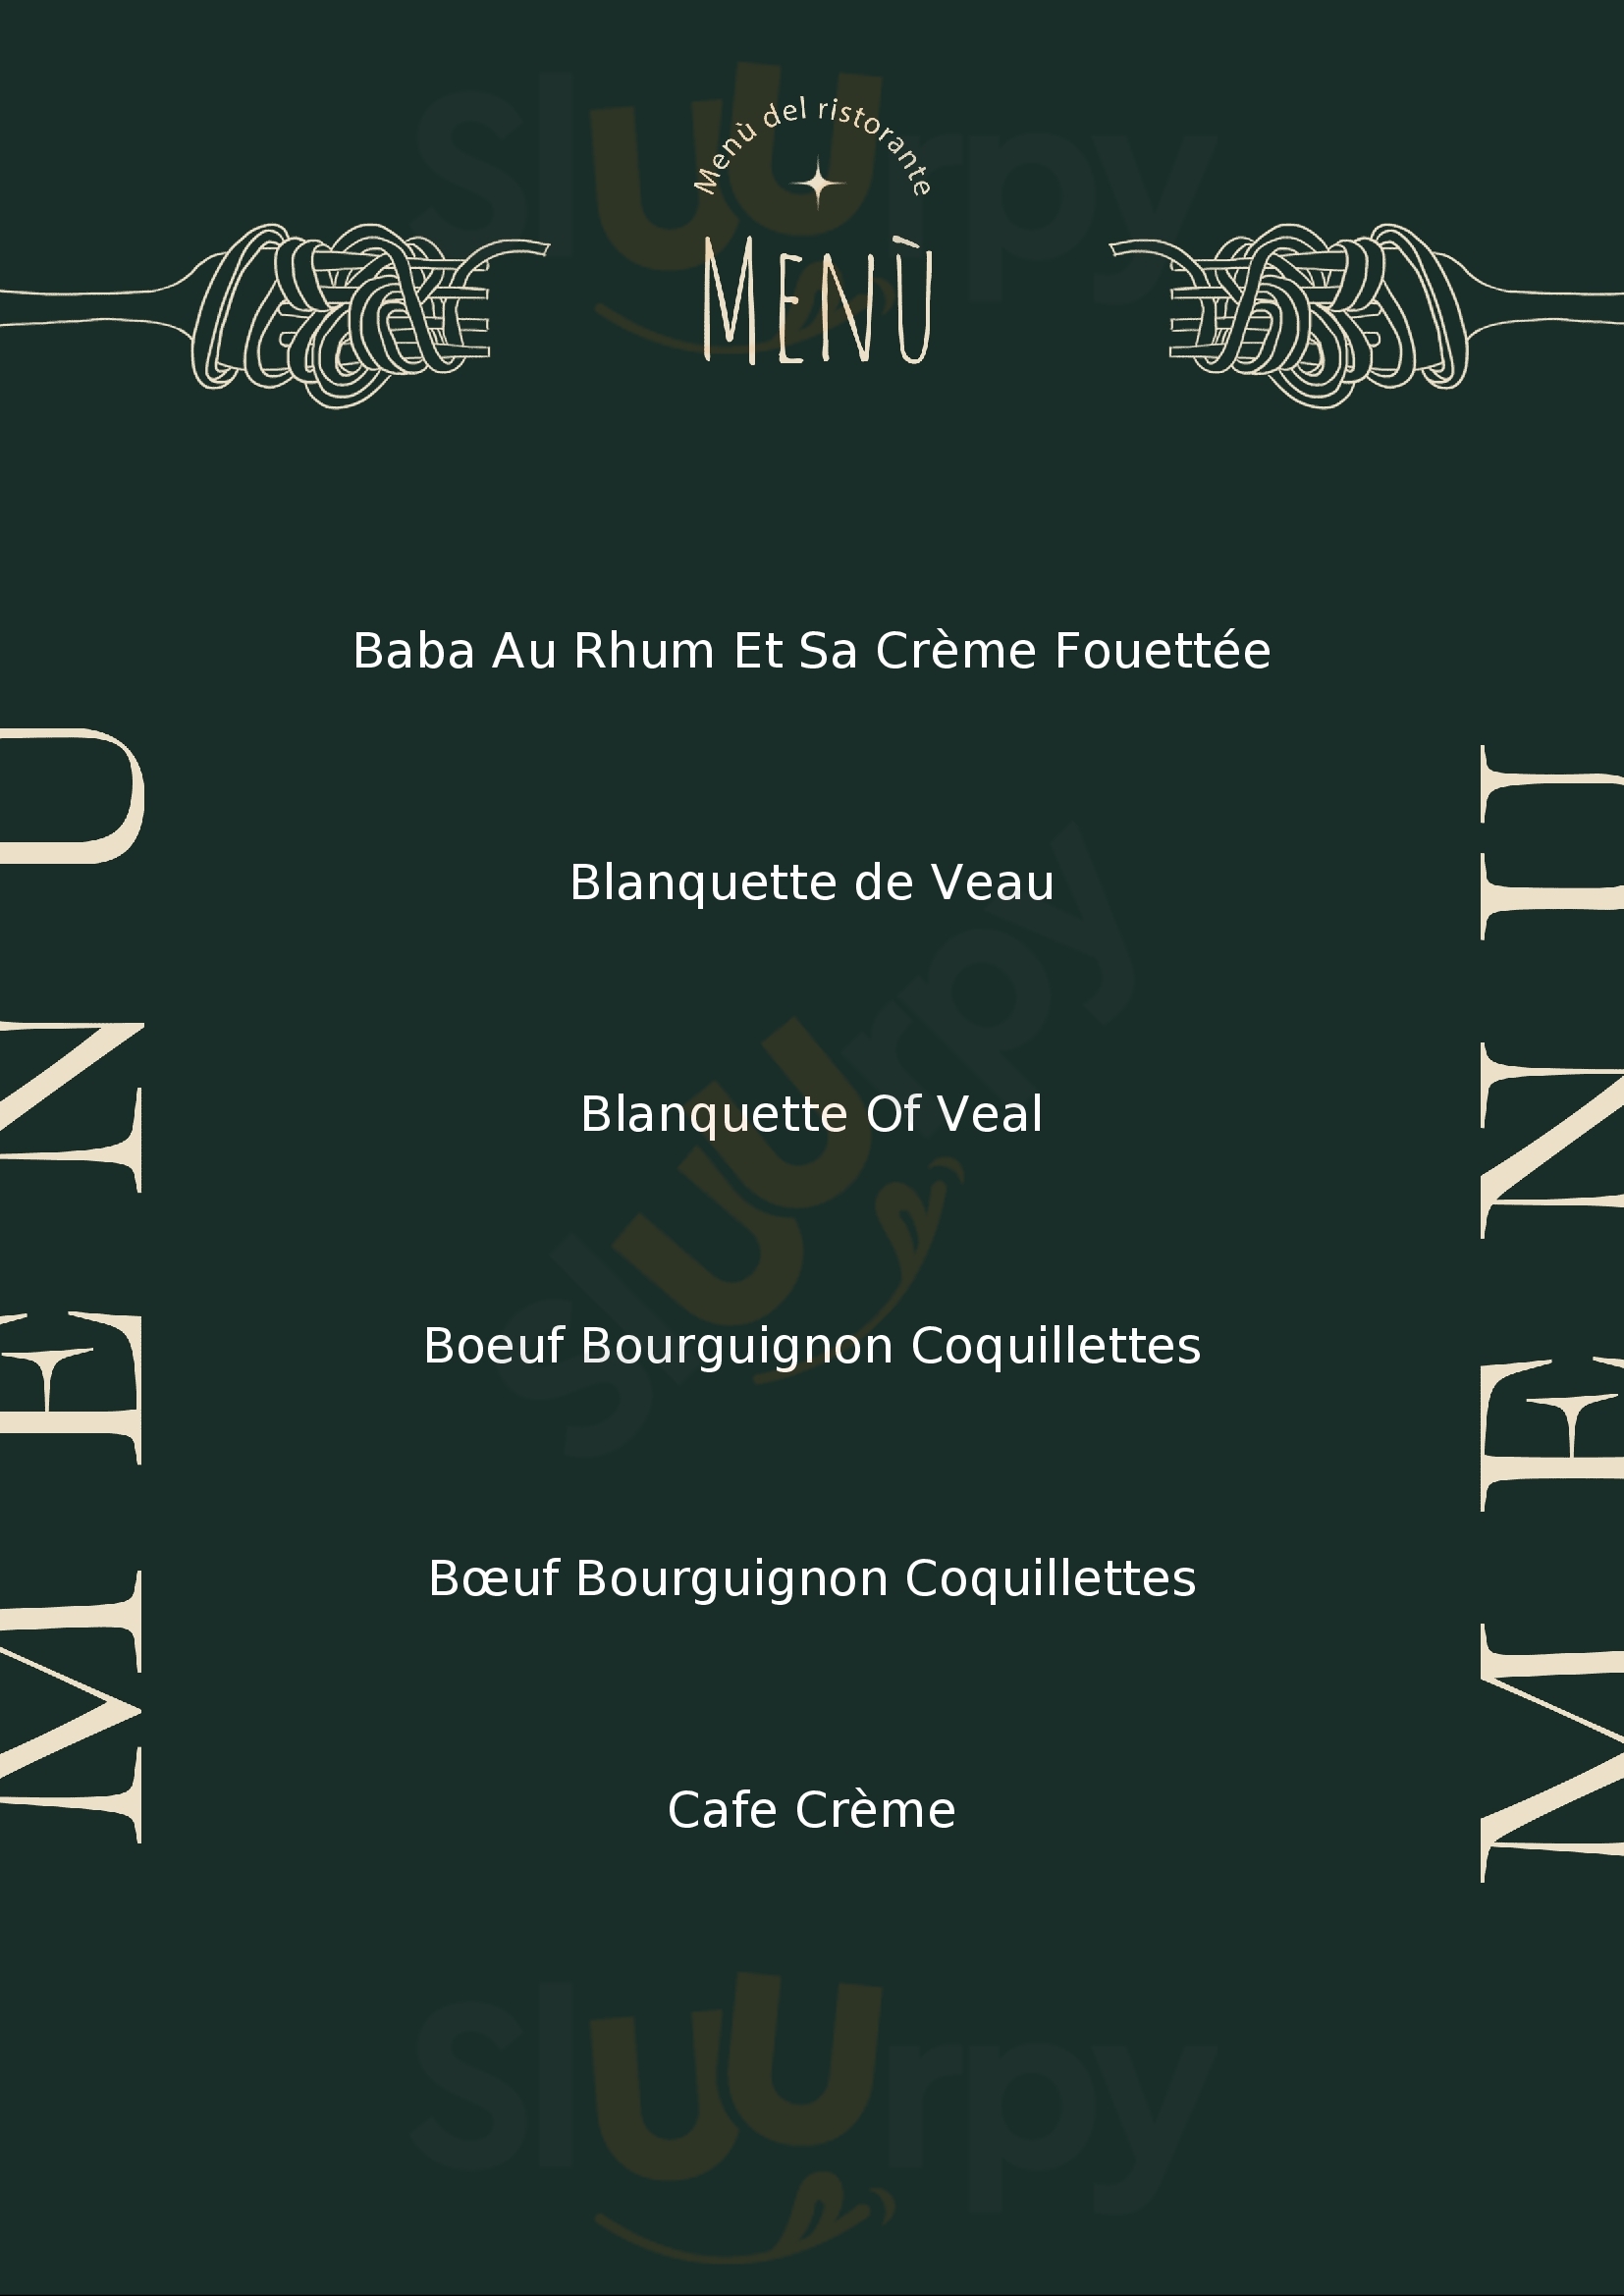 Le Bouillon Croix-rousse Lyon Menu - 1